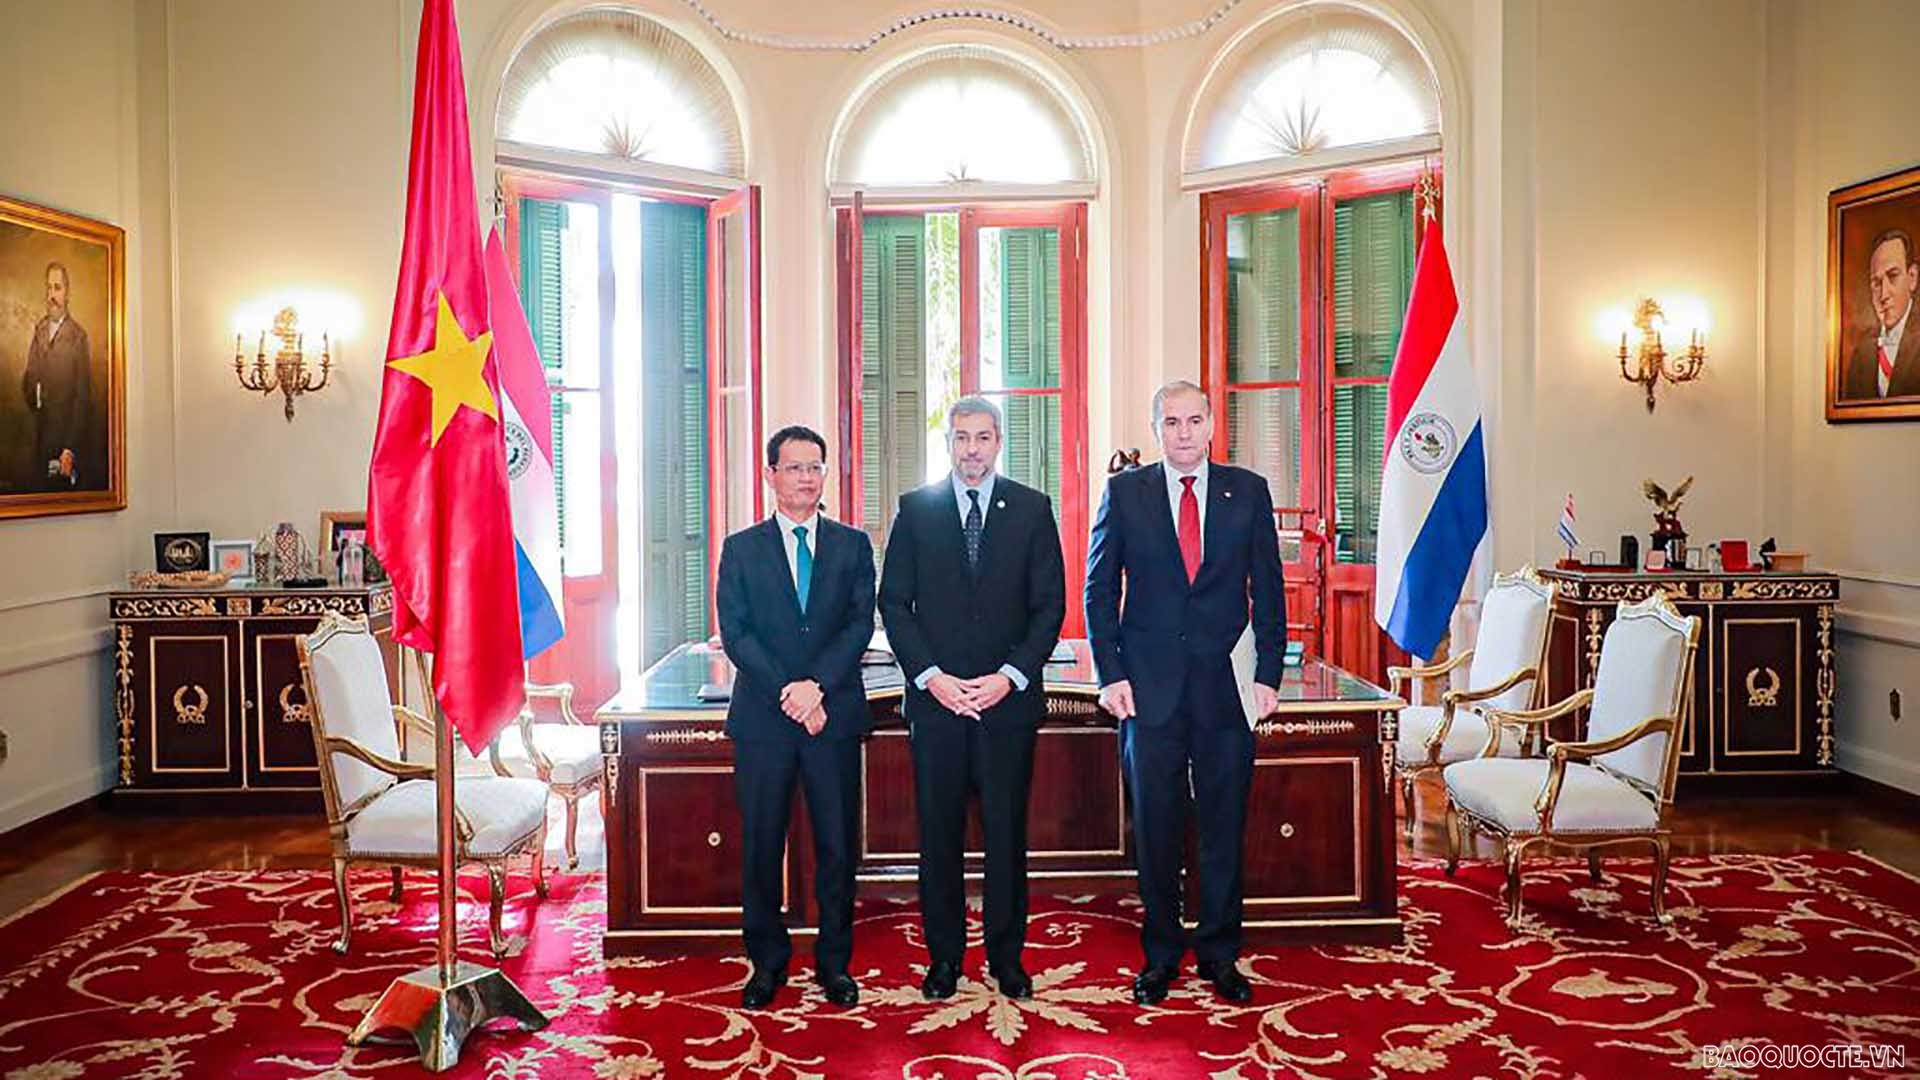 Tổng thống Paraguay Mario Abdo Benitez và Đại sứ Dương Quốc Thanh cùng các đại biểu.